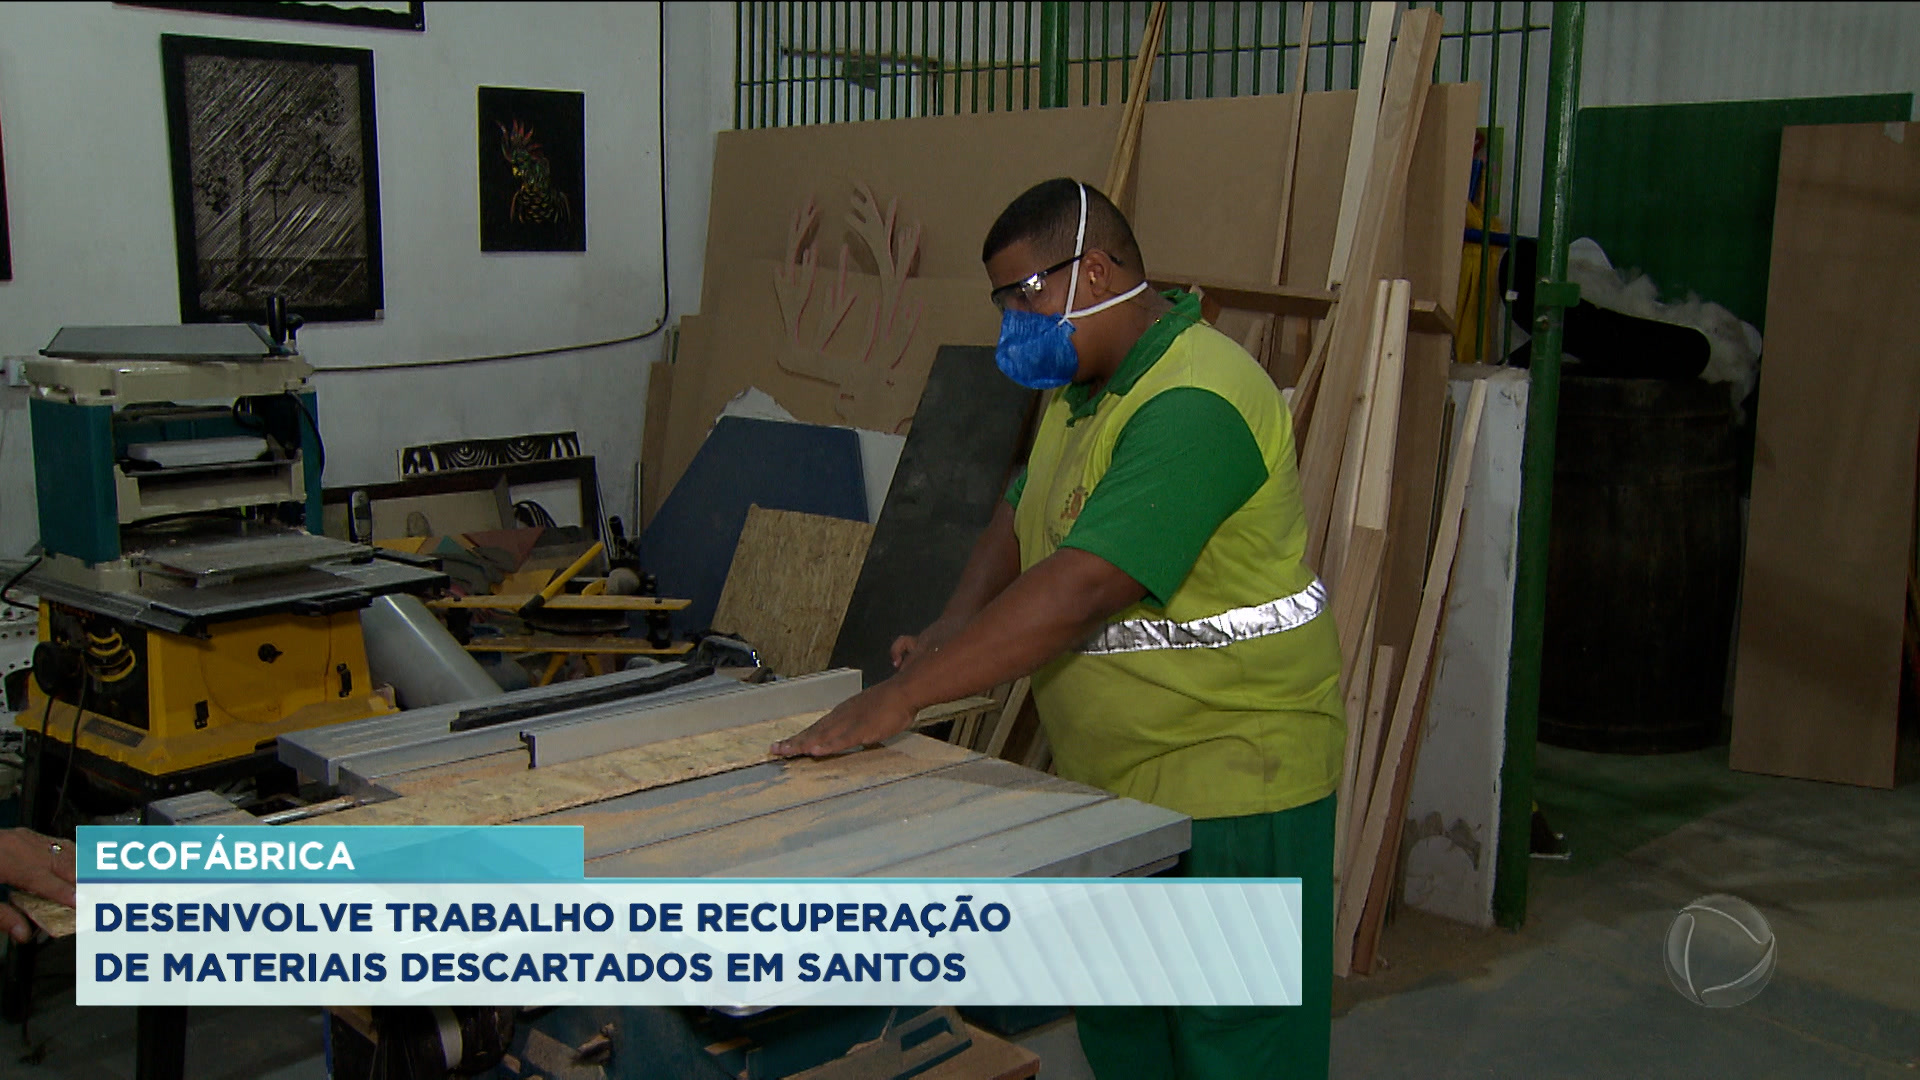 Vídeo: Ecofábrica desenvolve trabalho de recuperação de materiais